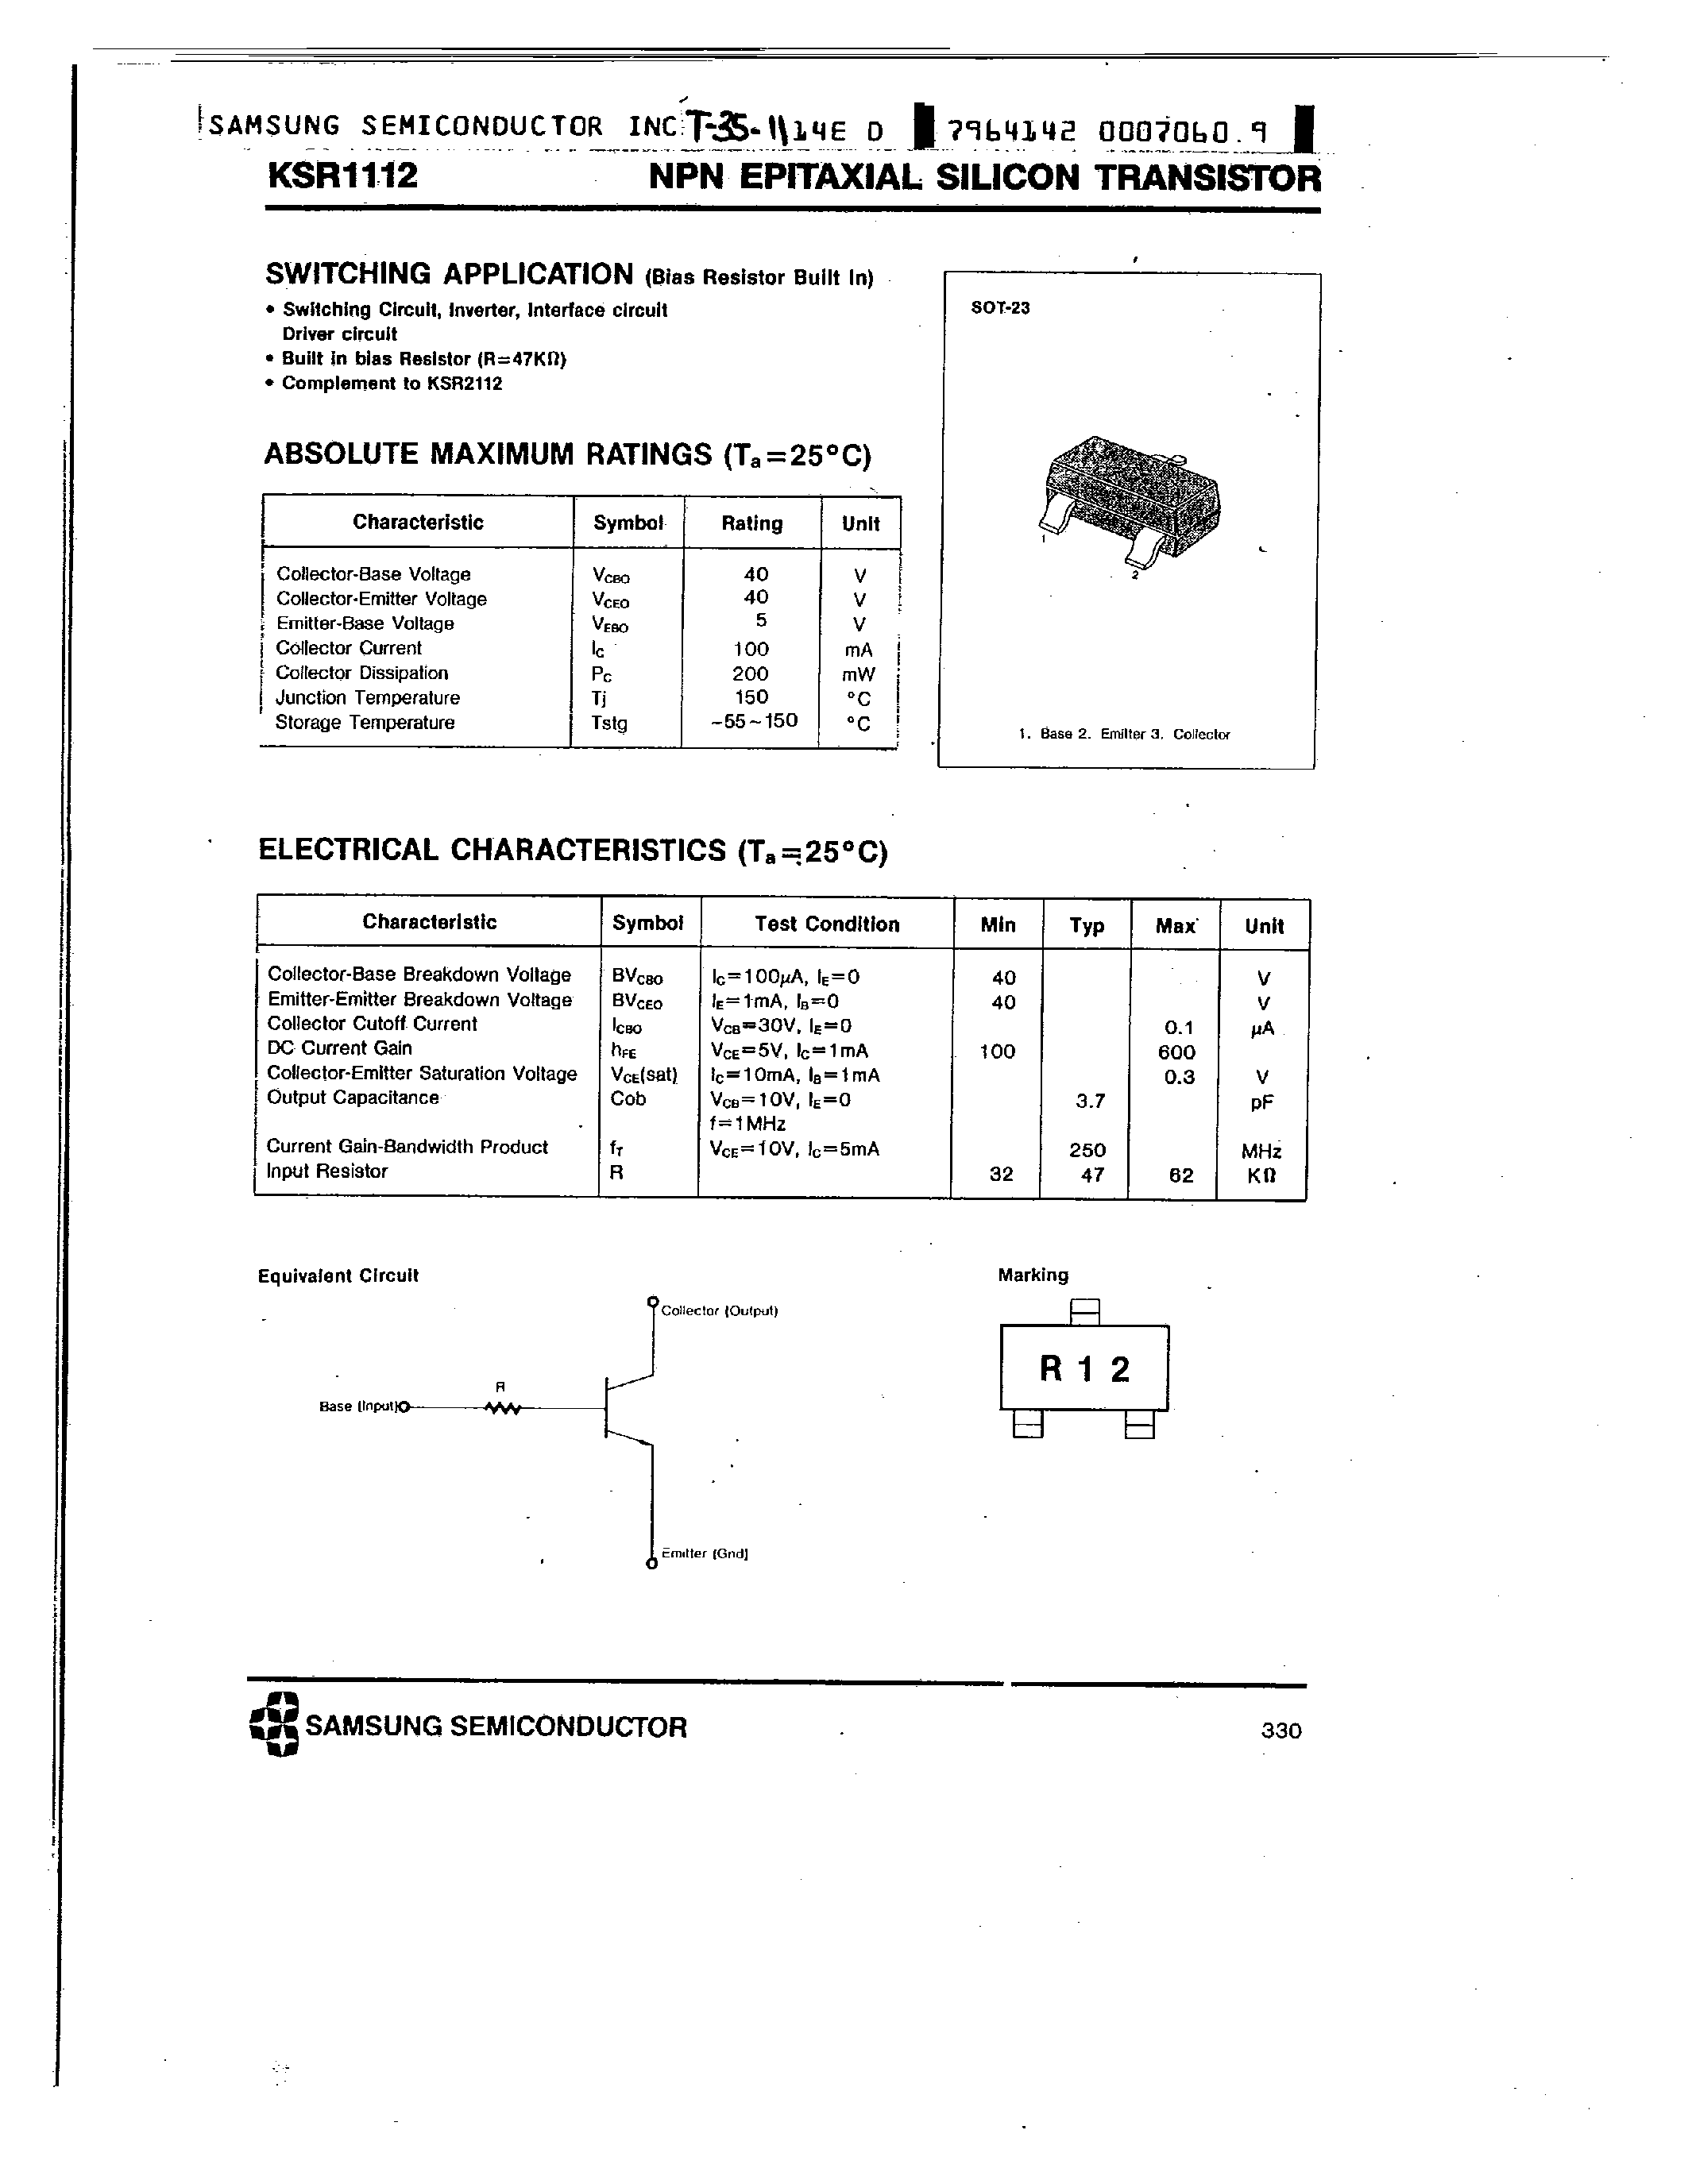 Datasheet KSR1112 - NPN SWITCHING APPLICATION) page 1